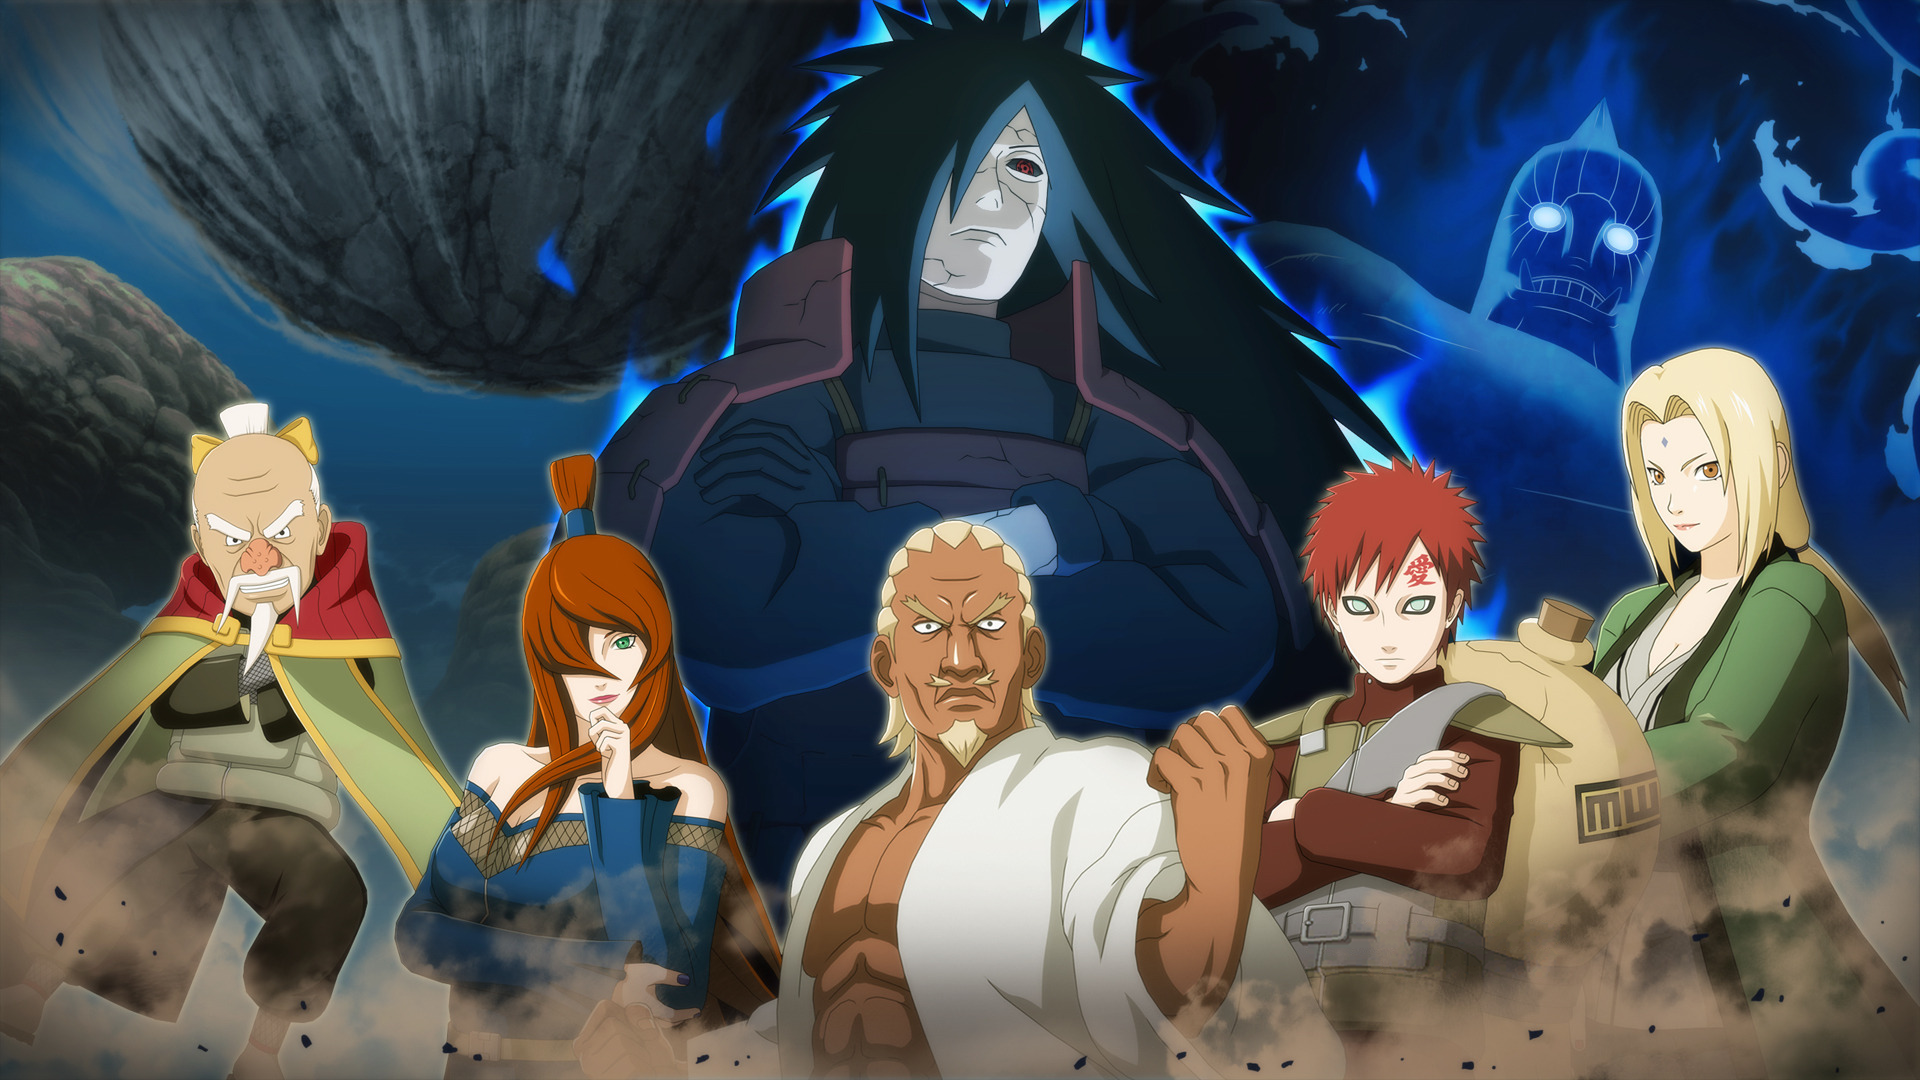 Road to Ninja - Naruto the Movie Wallpaper 3 by Maxiuchiha22 on DeviantArt